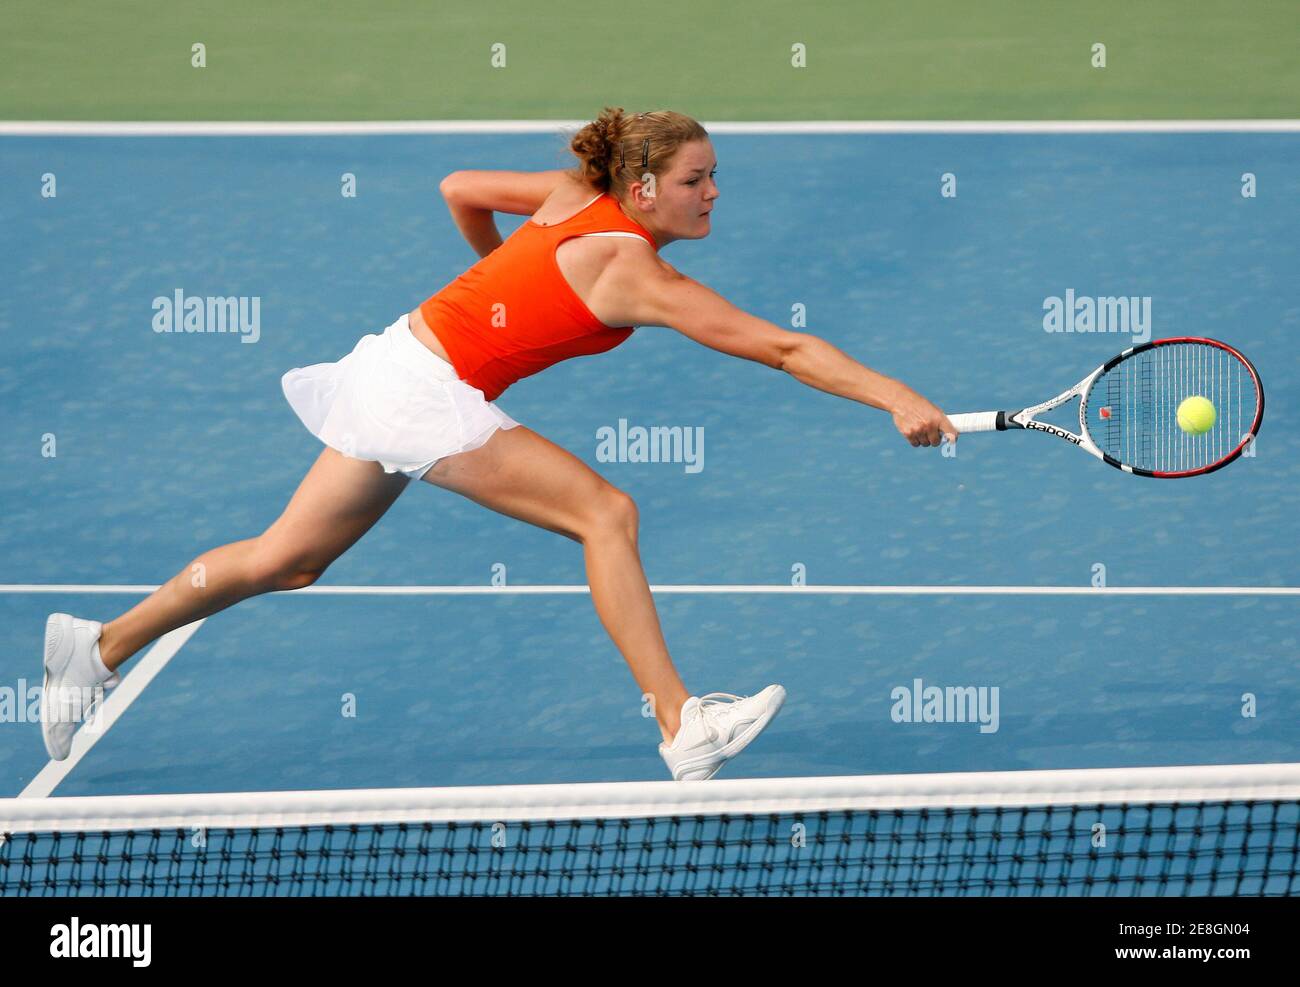 Il polacco Agnieszka Radwanska ha fatto ritorno durante la sua partita contro la lussemburghese Anne Kremer al torneo di tennis Pattaya Women's Open 7 febbraio 2008. REUTERS/Chaiwat Subprasom (THAILANDIA) Foto Stock